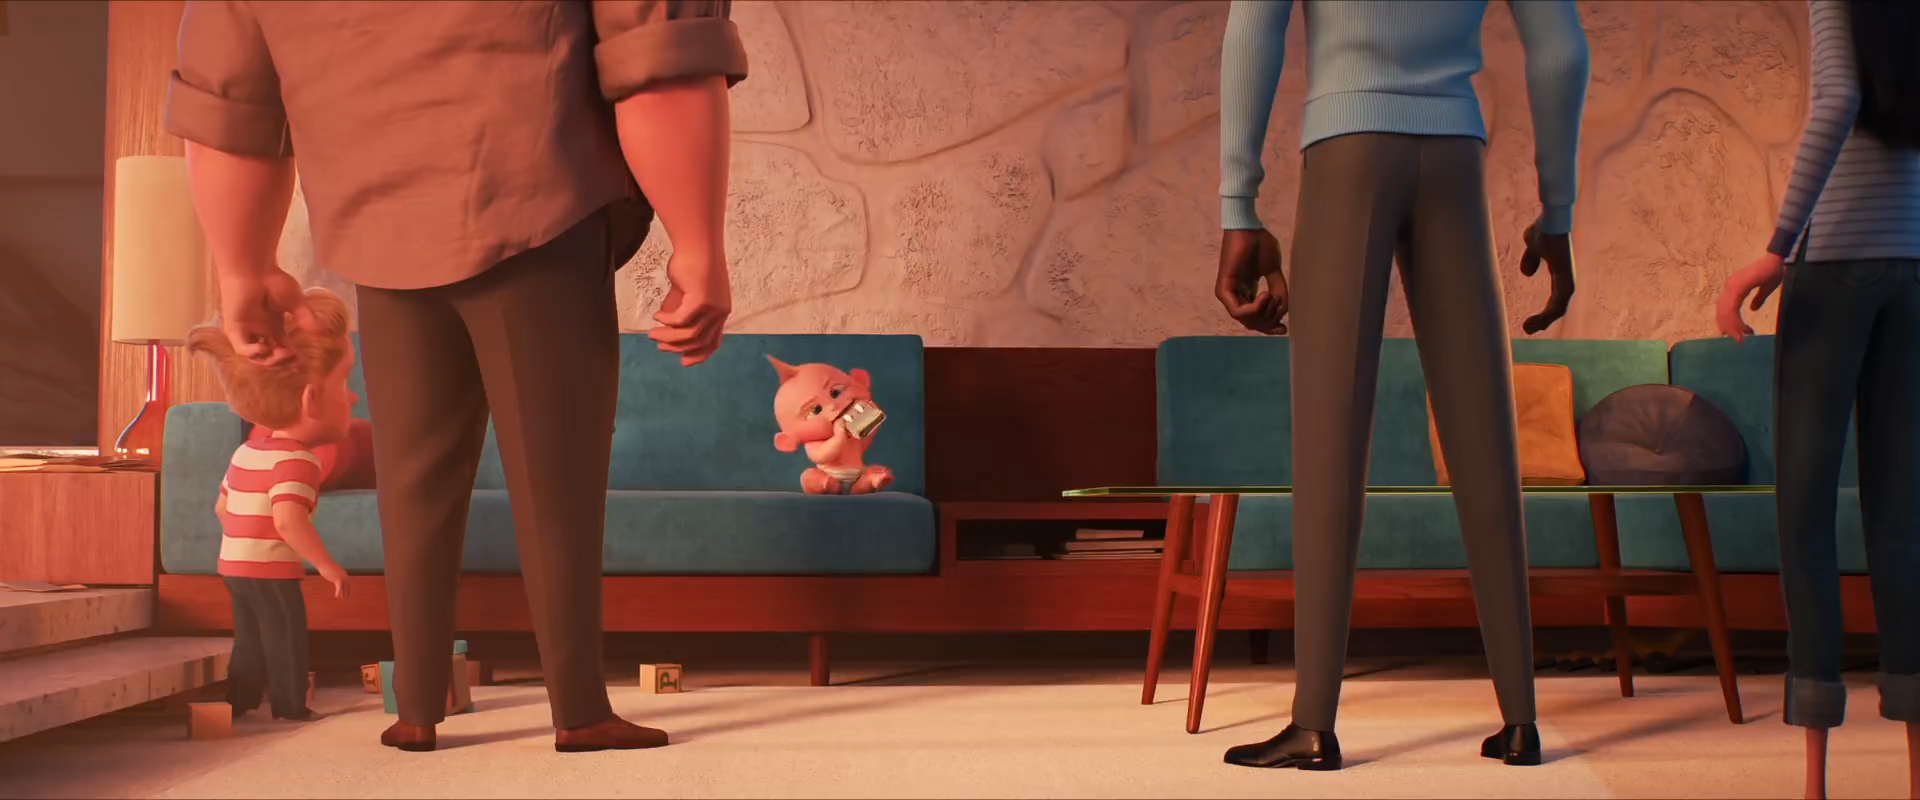 Incredibles 2 screencap (Disney/Pixar)